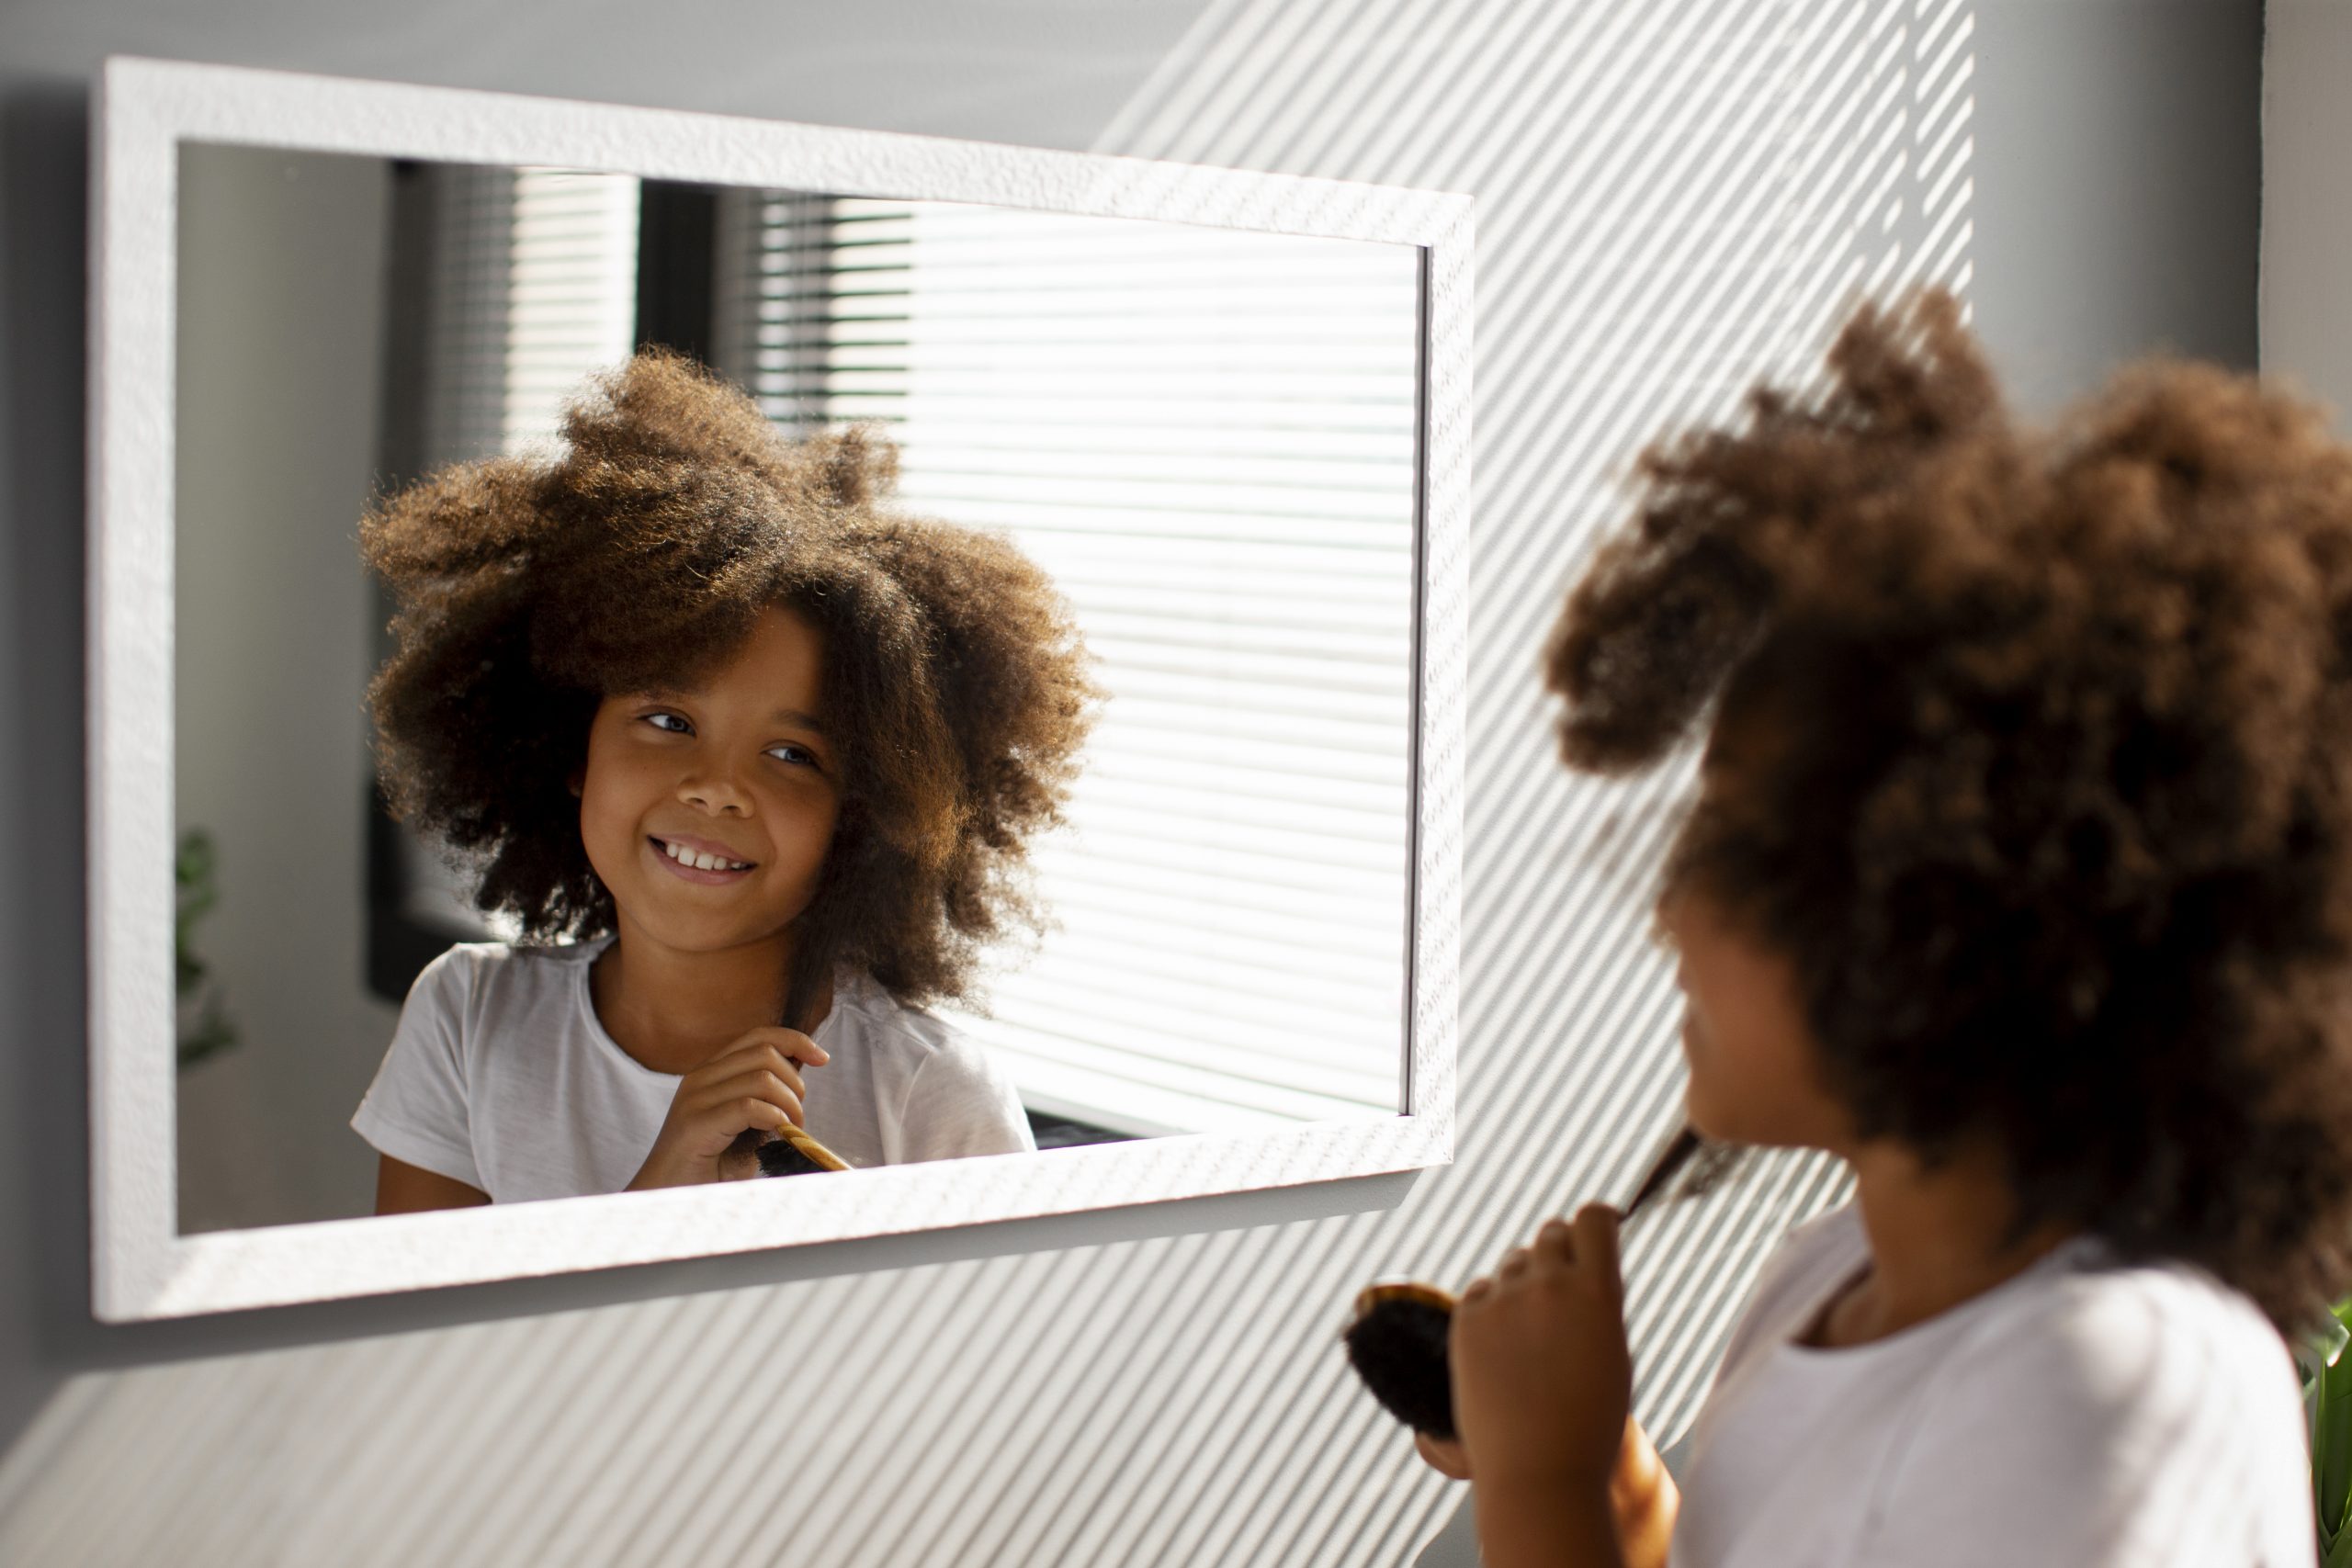 Penteados para cabelos crespos infantis: confira ideias